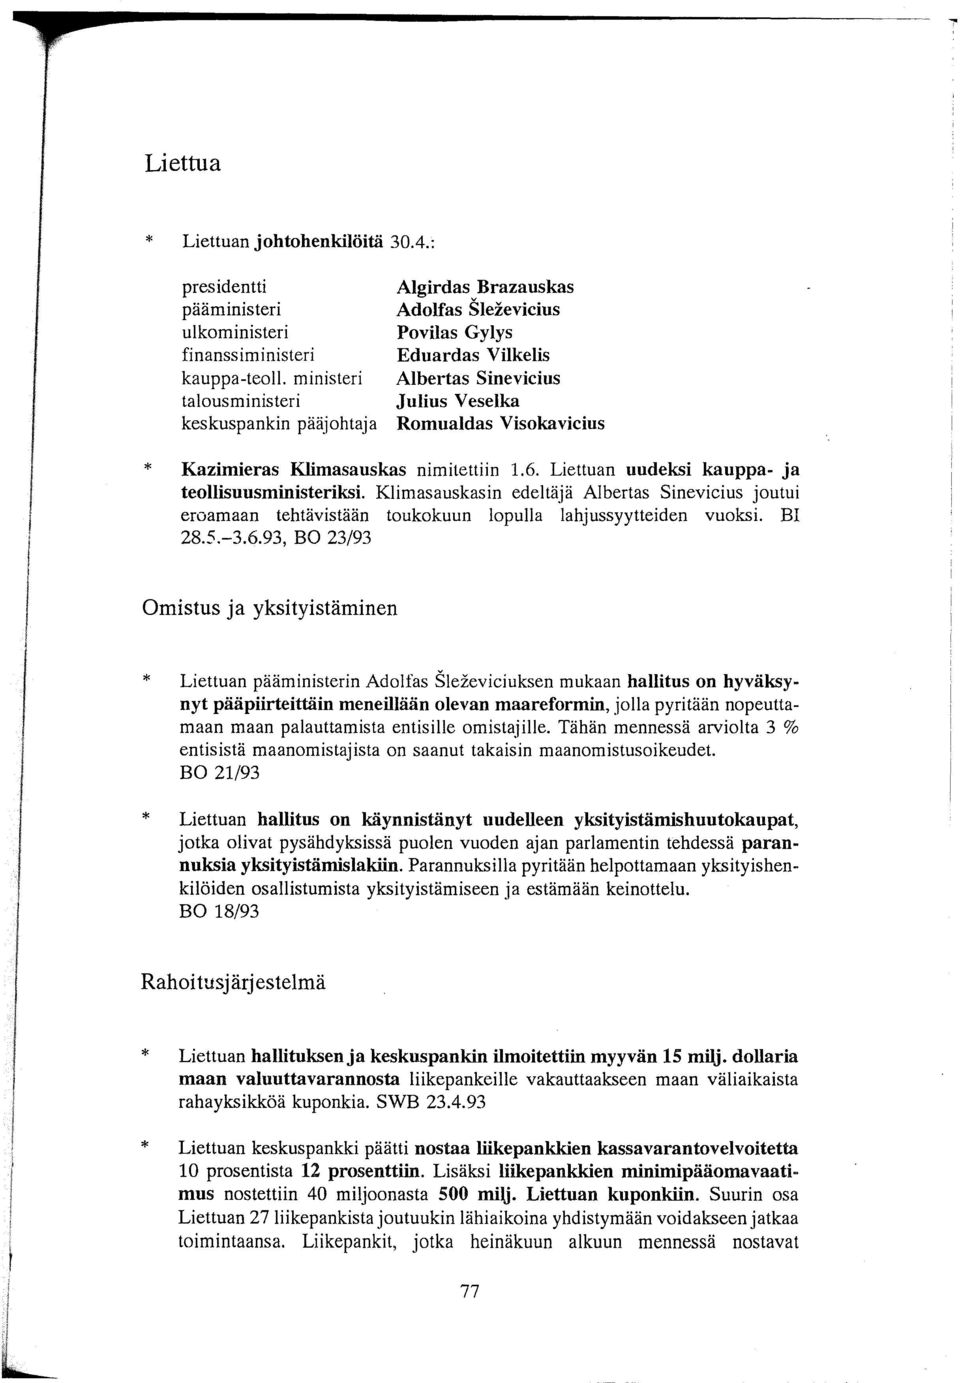 Klimasauskas nimitettiin 1.6. Liettuan uudeksi kauppa- ja teollisuusministeriksi. Klimasauskasin edeltäjä Albertas Sinevicius joutui eroamaan tehtävistään toukokuun lopulla lahjussyytteiden vuoksi.